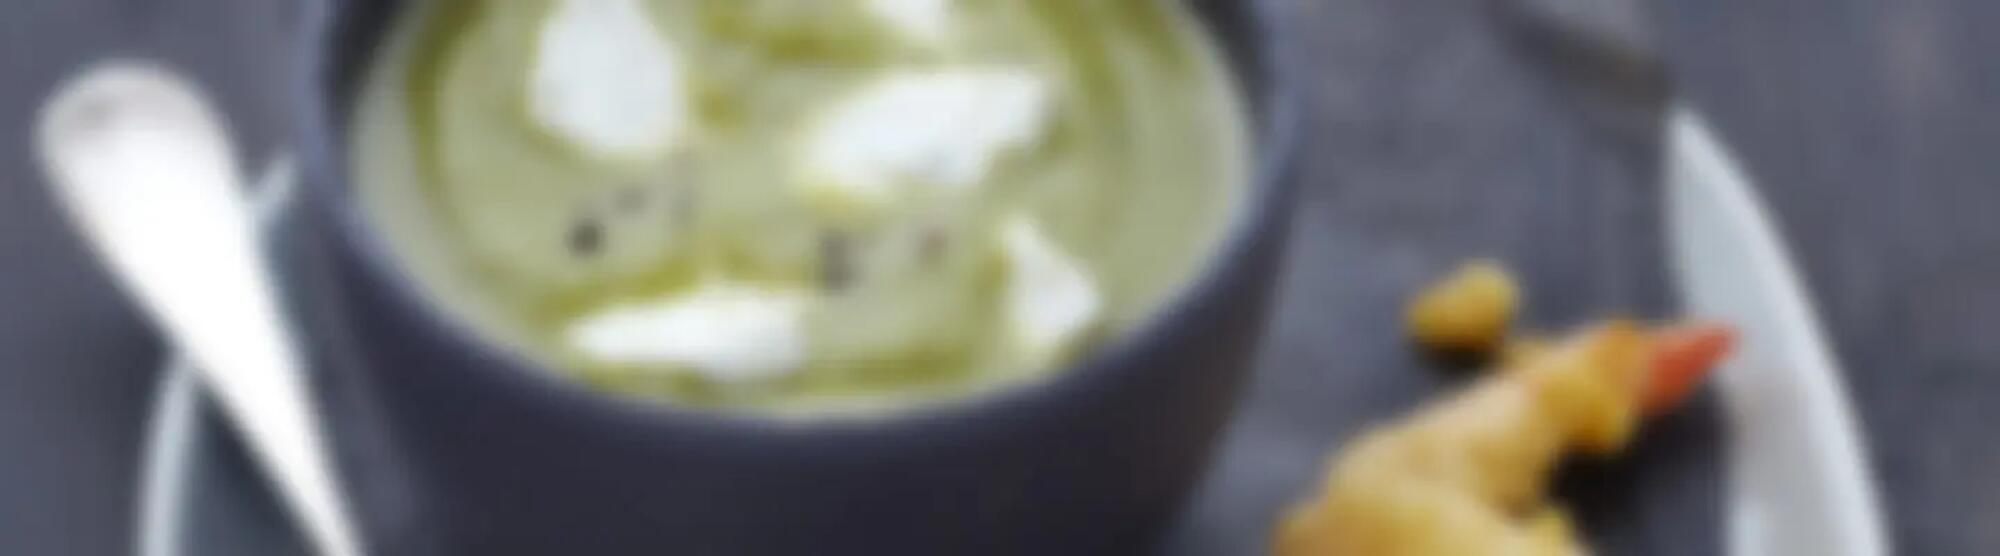 Recette : Velouté de courgette au fromage frais et tempura de gambas